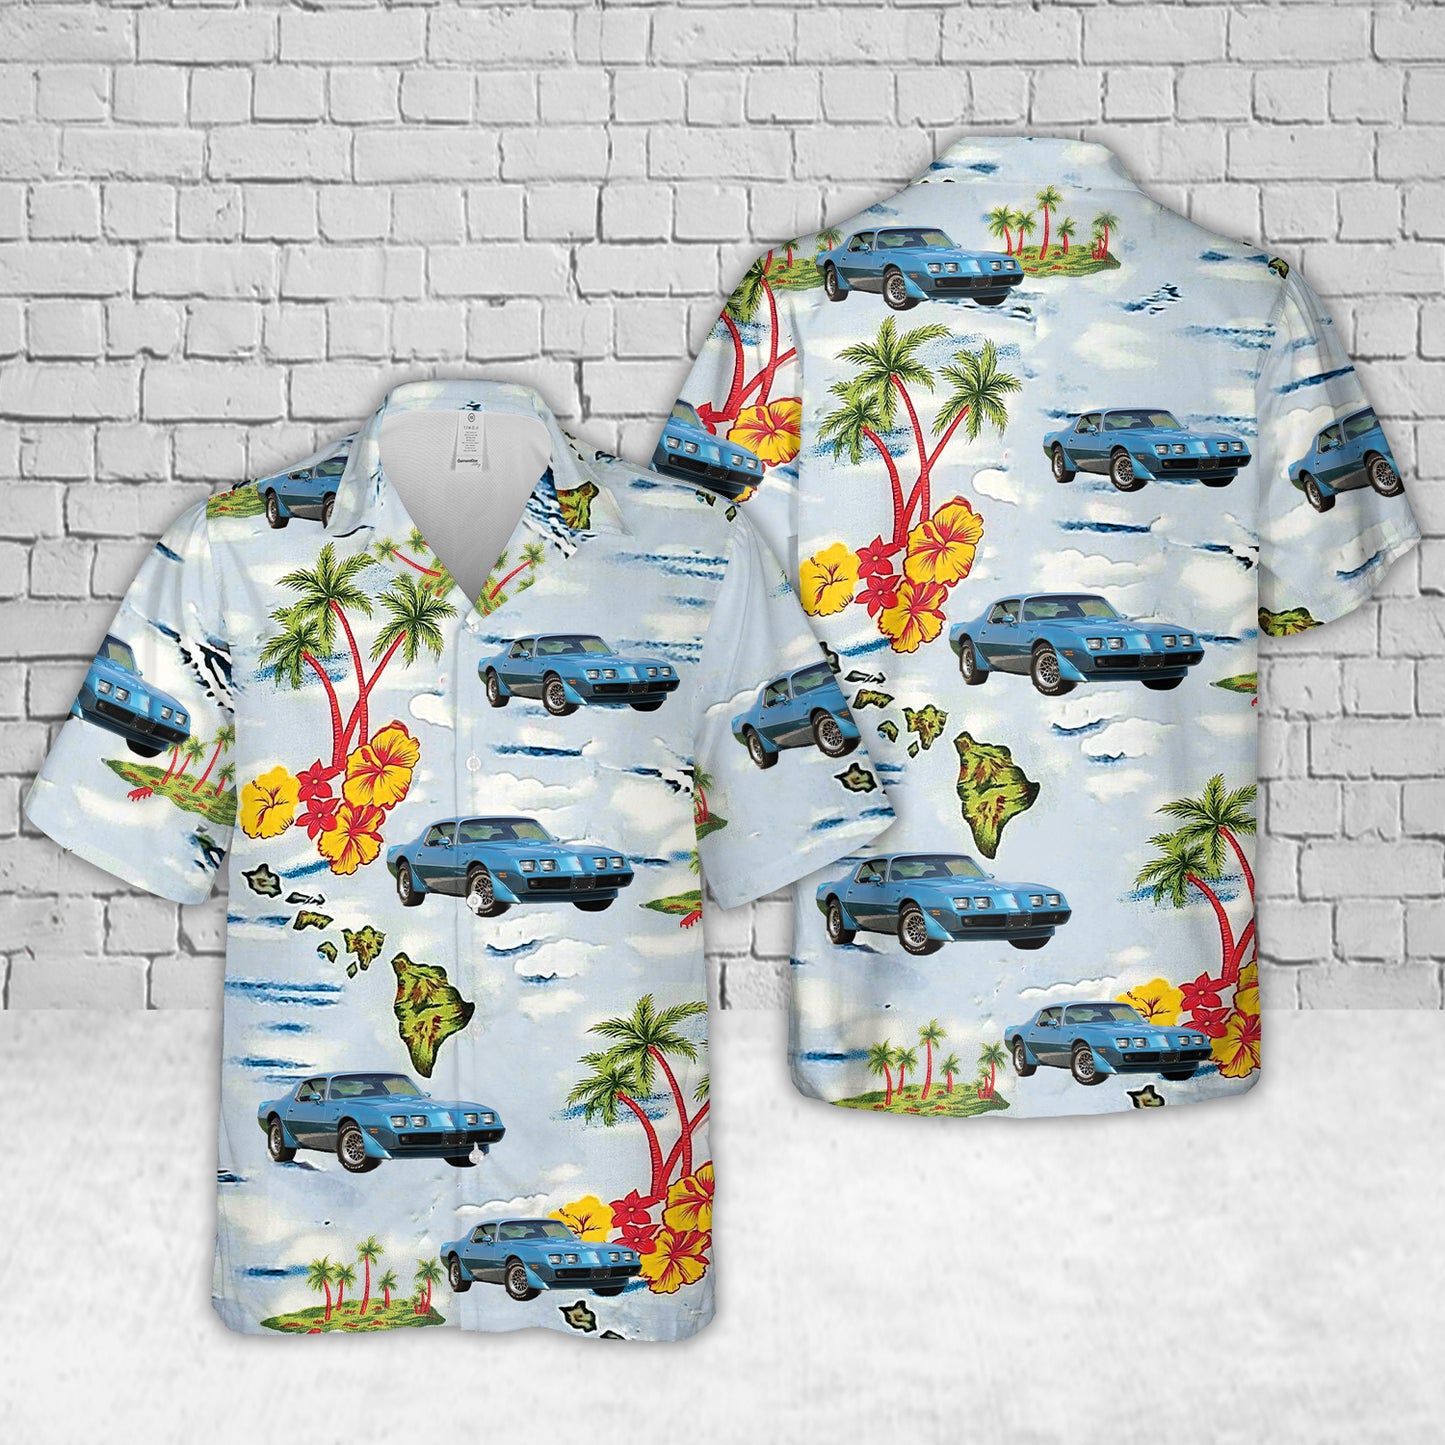 Pontiac Firebird 6.6 FW 87 Trans Am Hawaiian Shirt